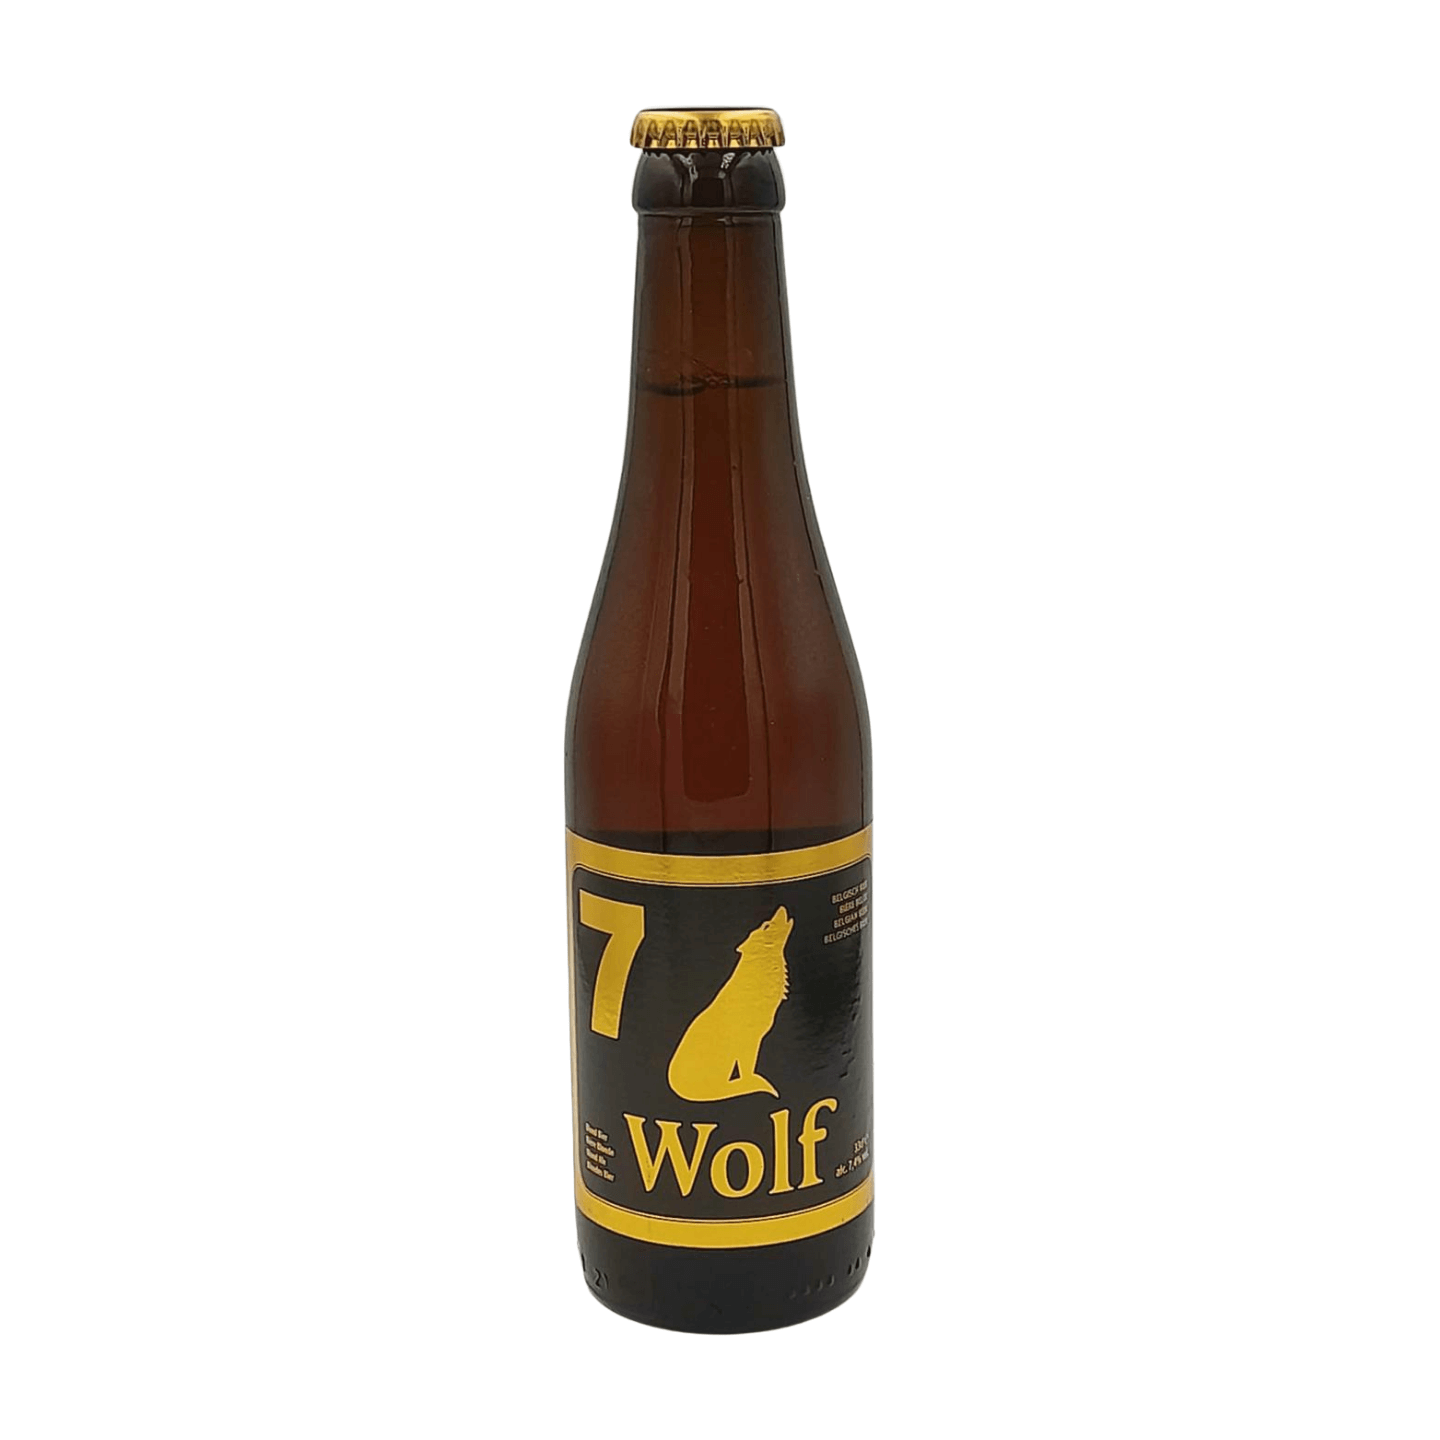 Wolf 7 | Blond Webshop Online Verdins Bierwinkel Rotterdam